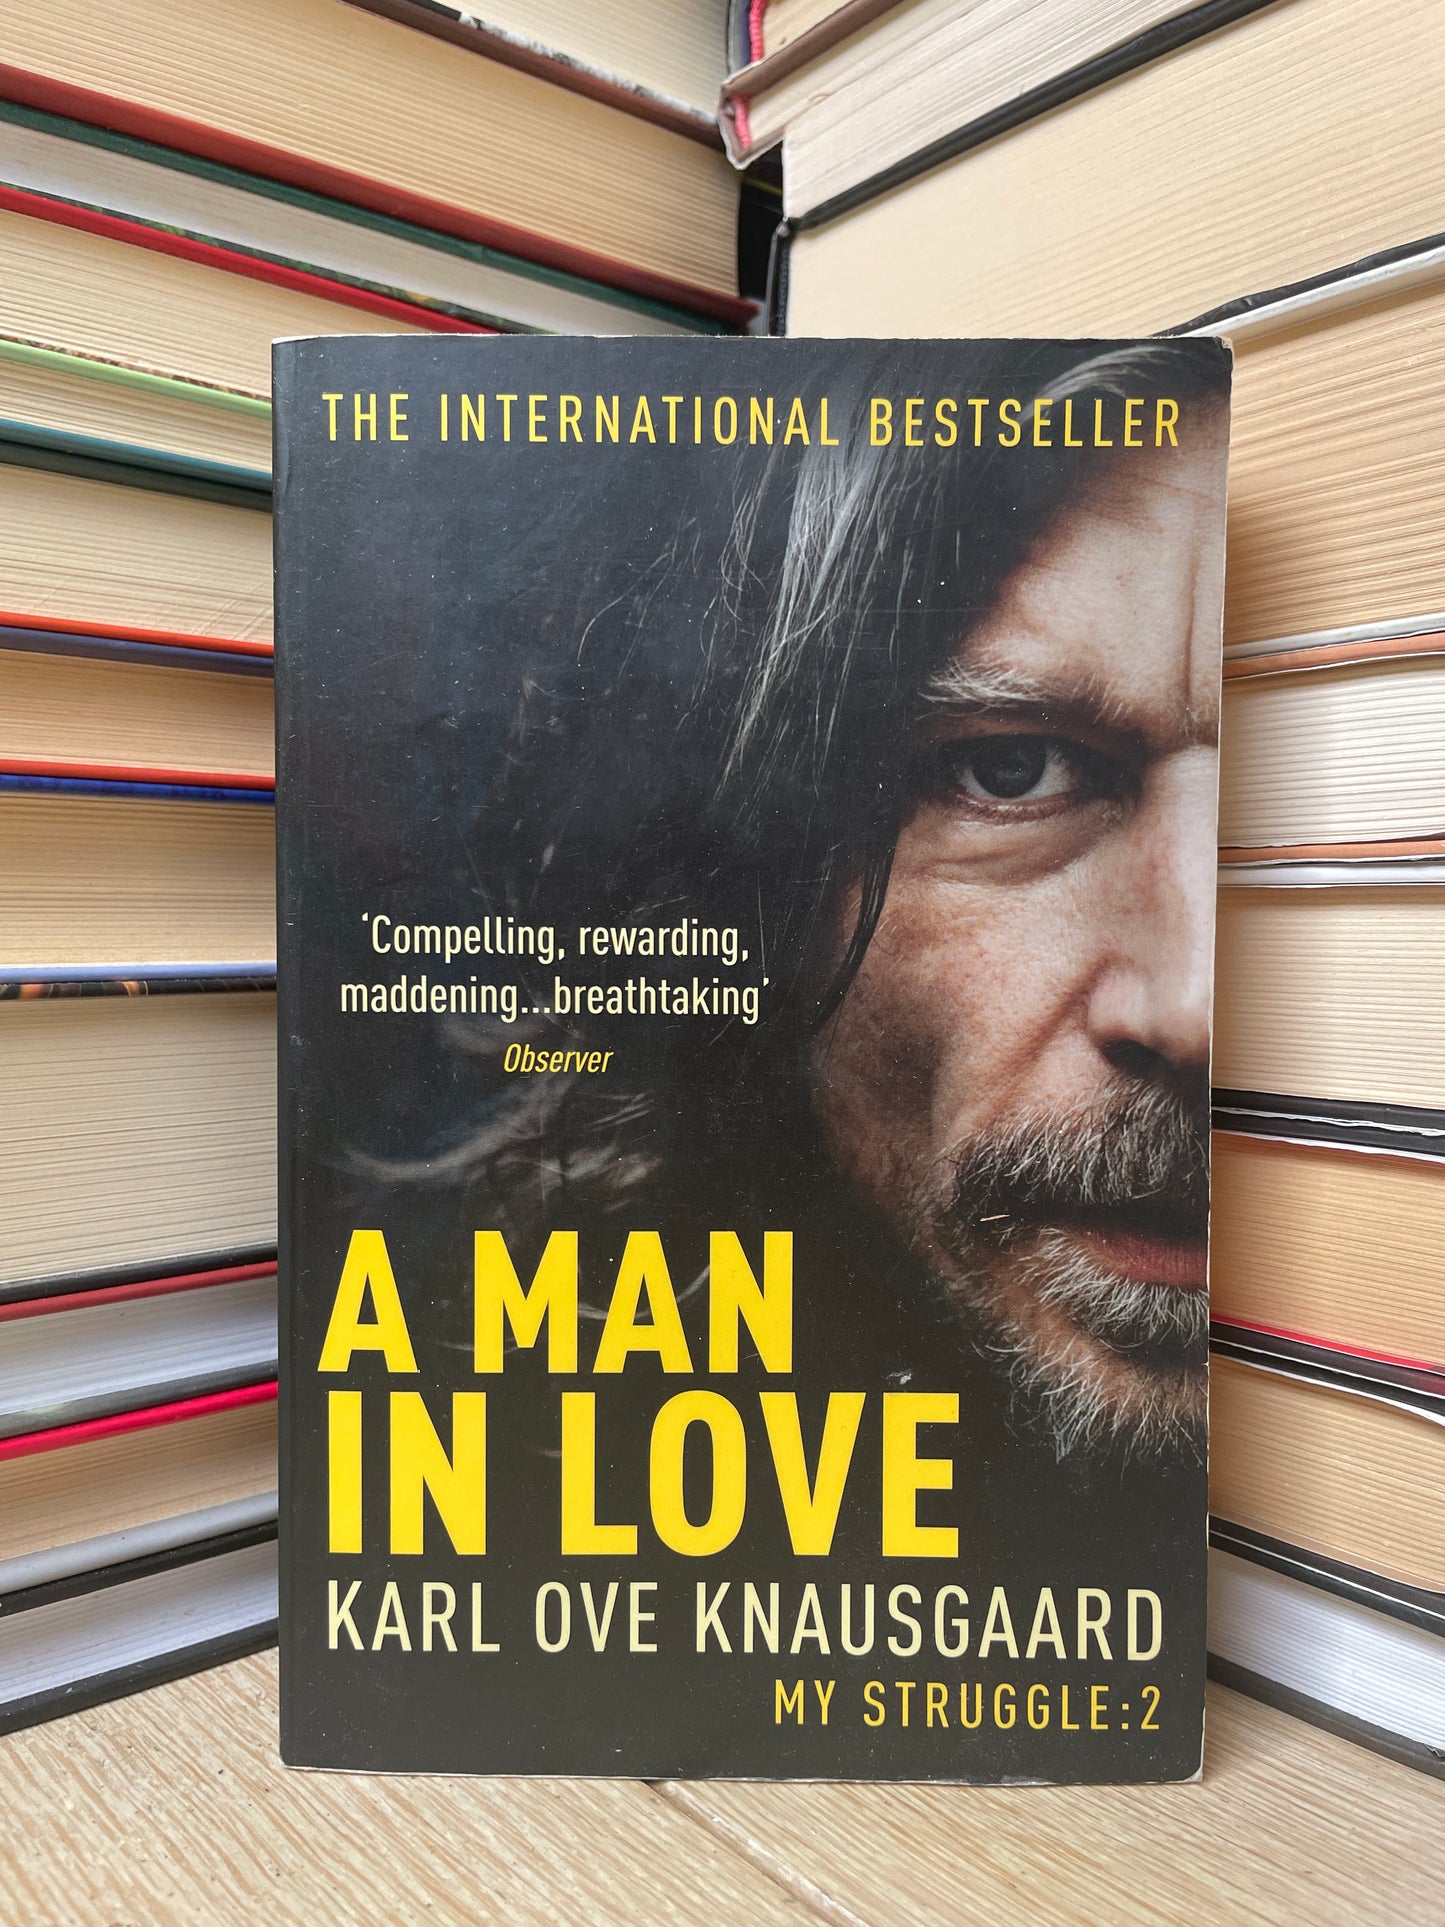 Karl Ove Knausgard - My Struggle 2: A Man in Love